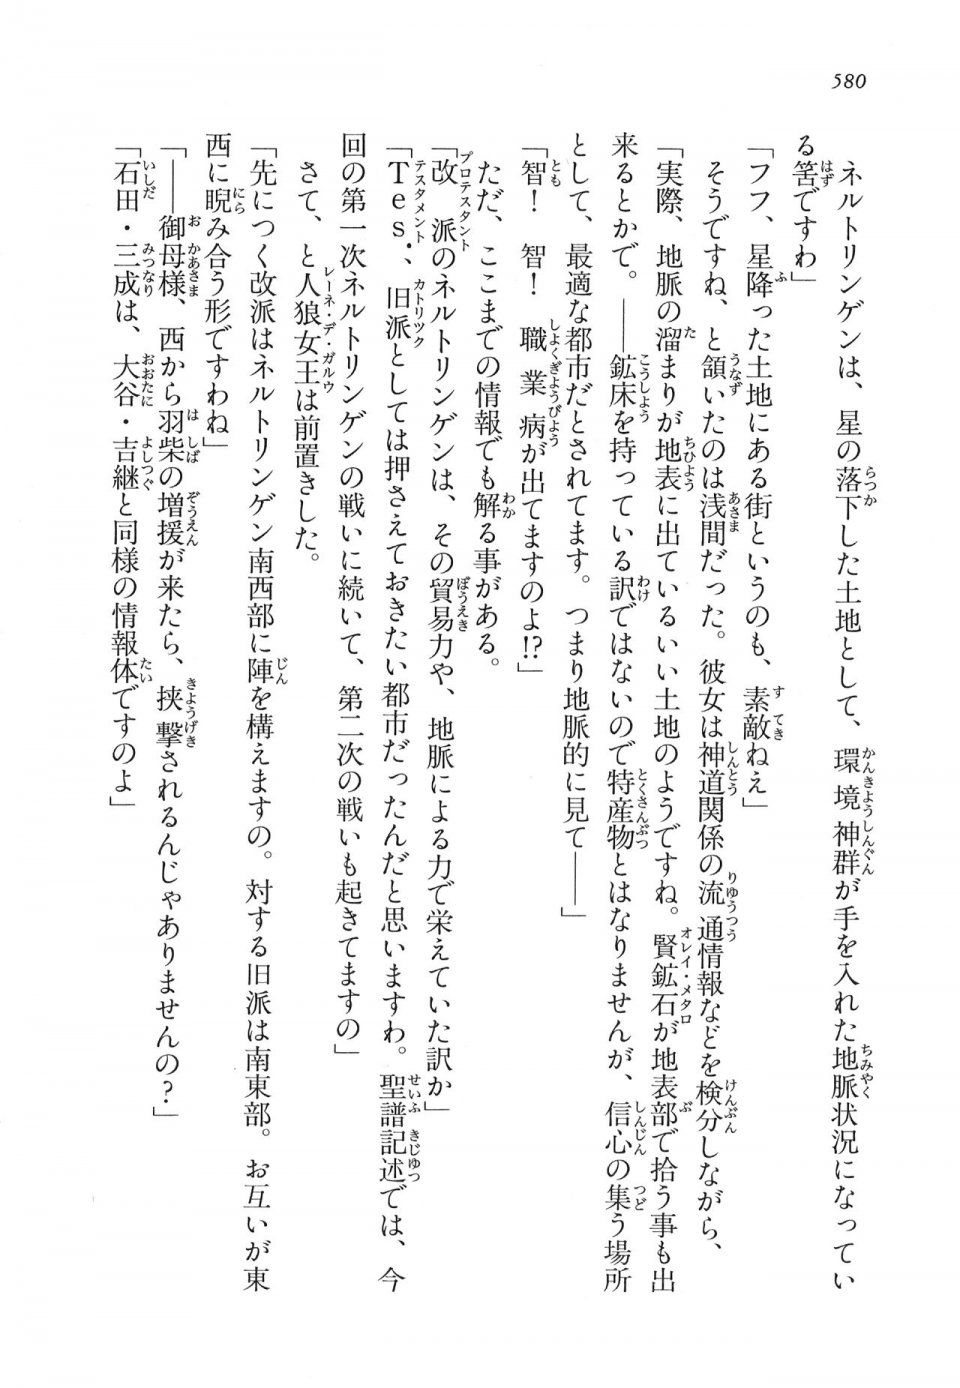 Kyoukai Senjou no Horizon LN Vol 16(7A) - Photo #580